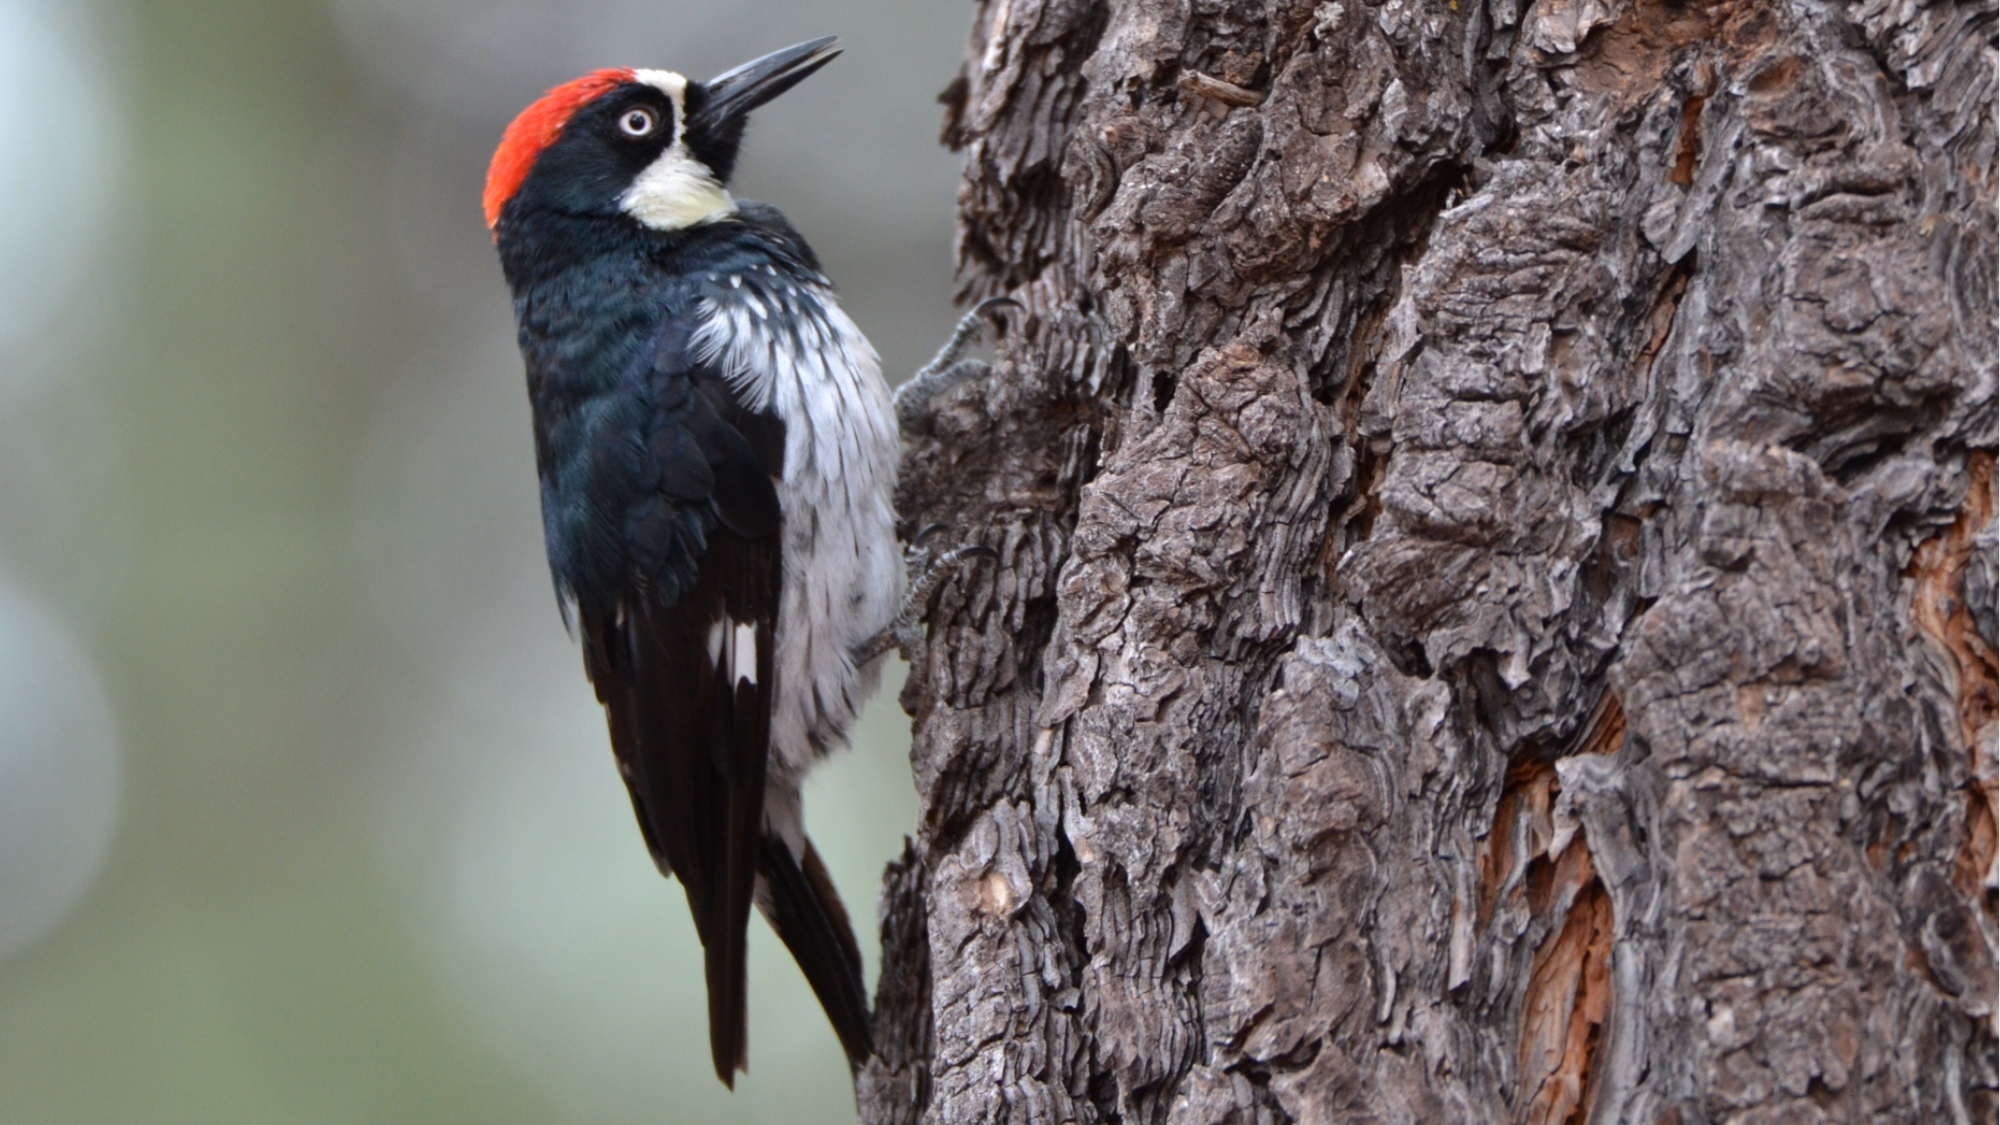 Woodpecker on a tree trunk